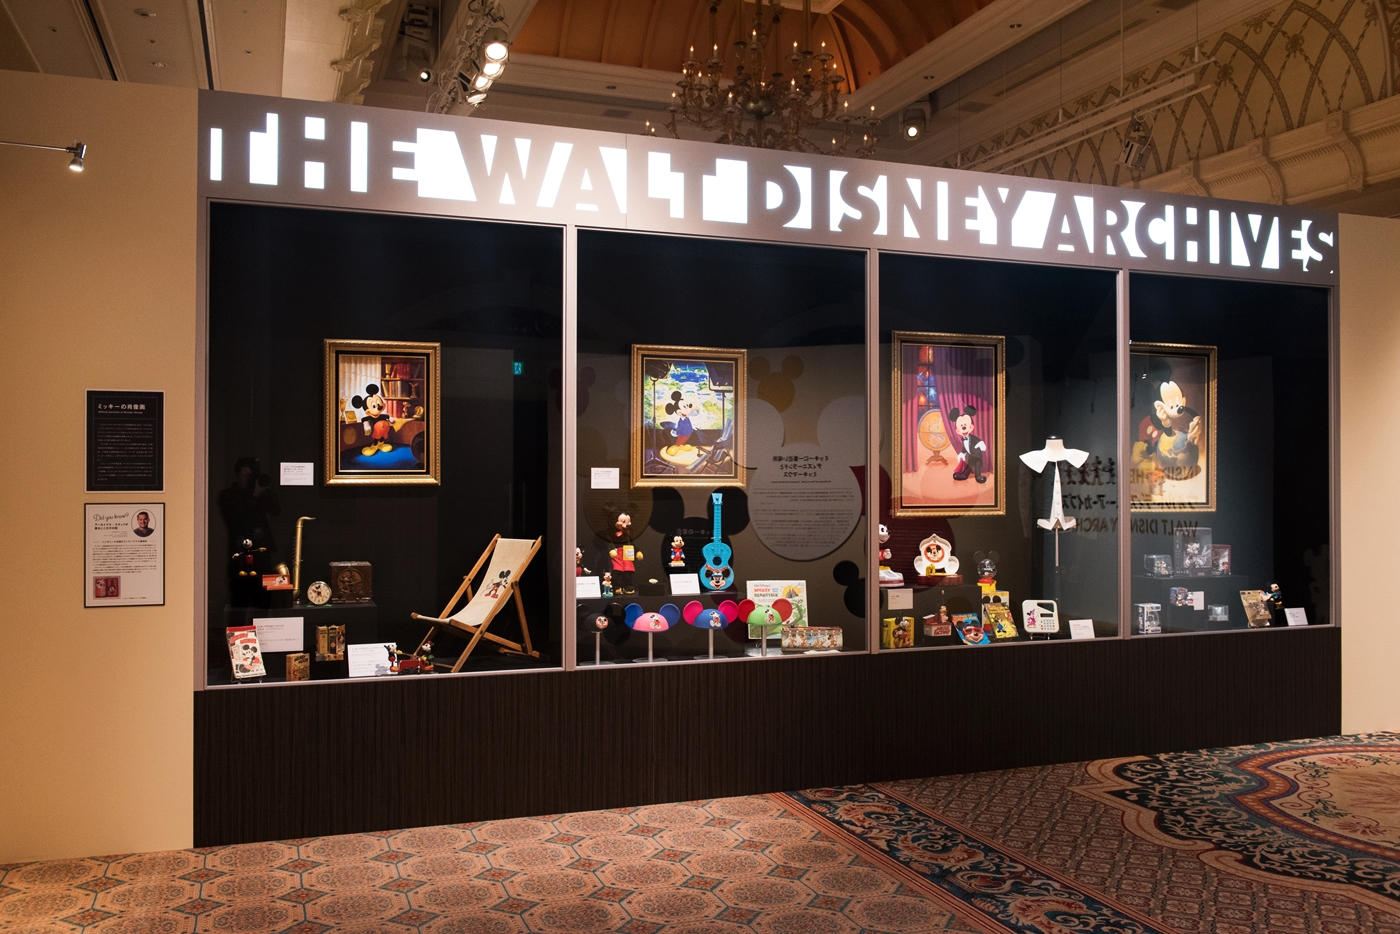 10 17 12 12 名古屋で開催 ウォルト ディズニー アーカイブス展 ミッキーマウスから続く 未来への物語 日刊ケリー ナゴヤで 365日 楽しい毎日